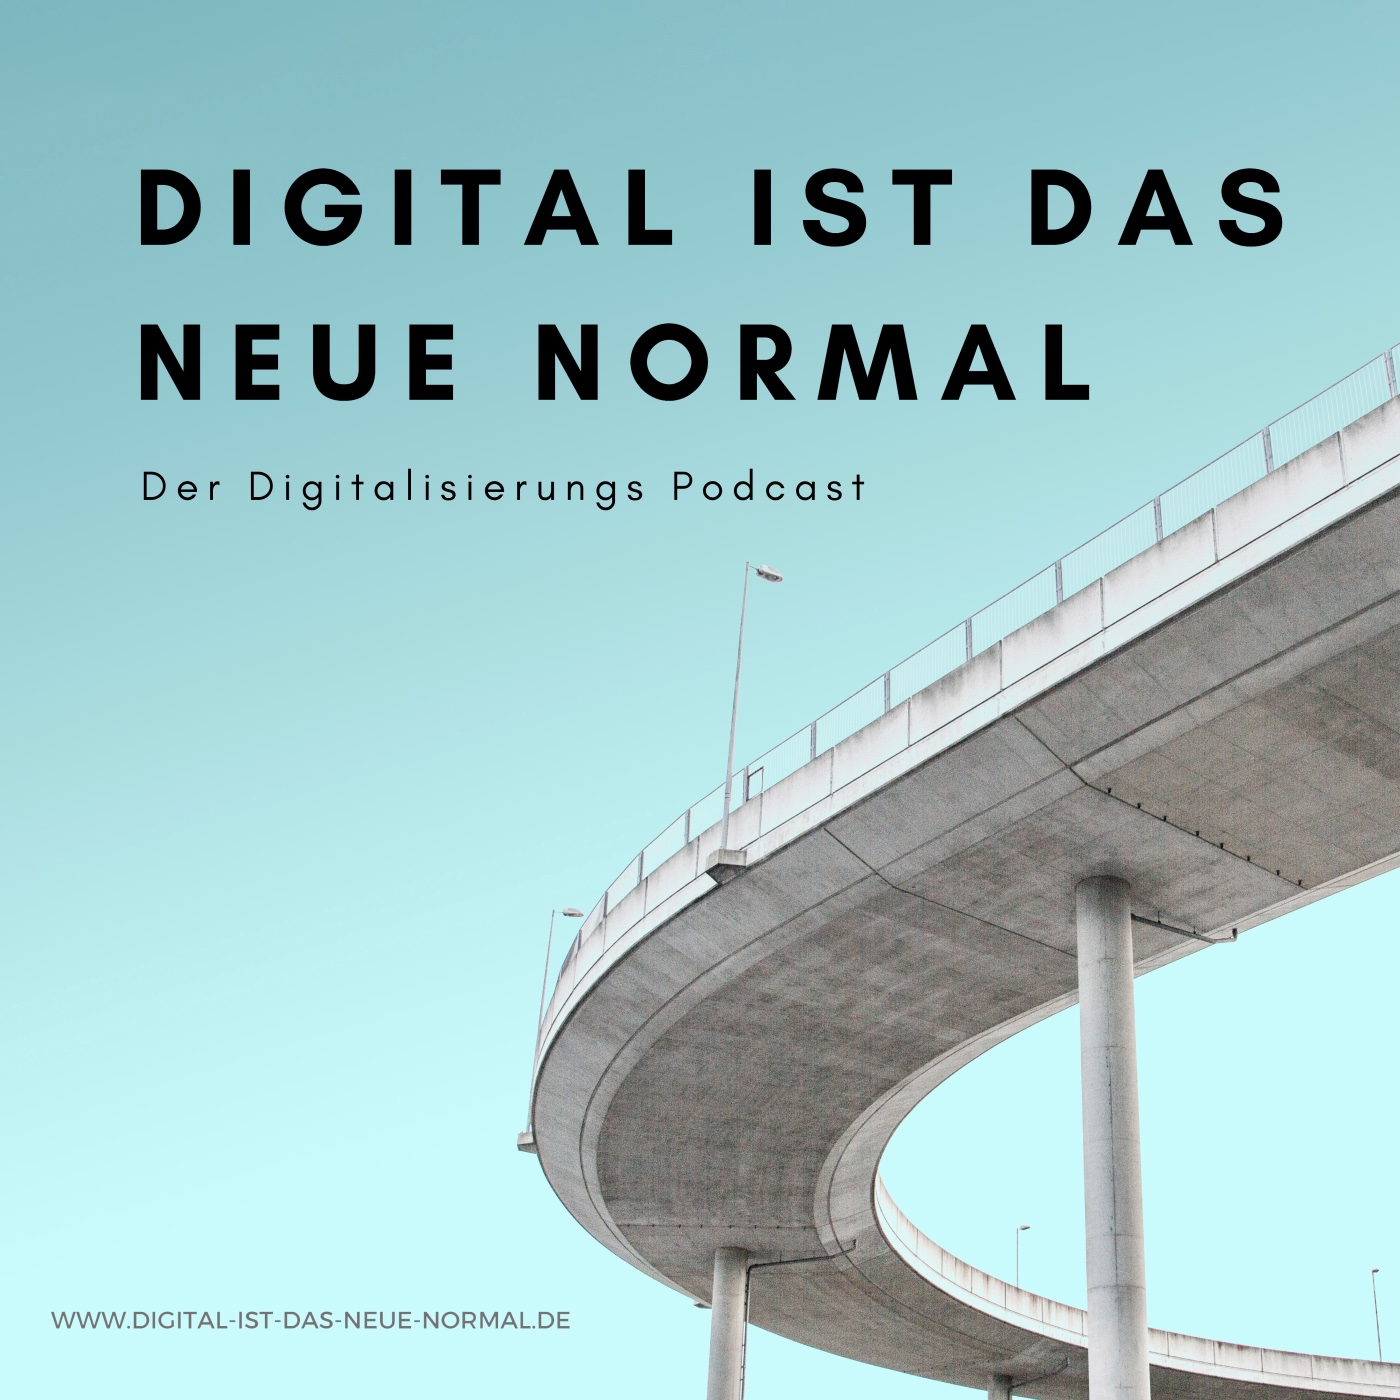 Digital ist das Neue Normal - der Digitalisierungs Podcast